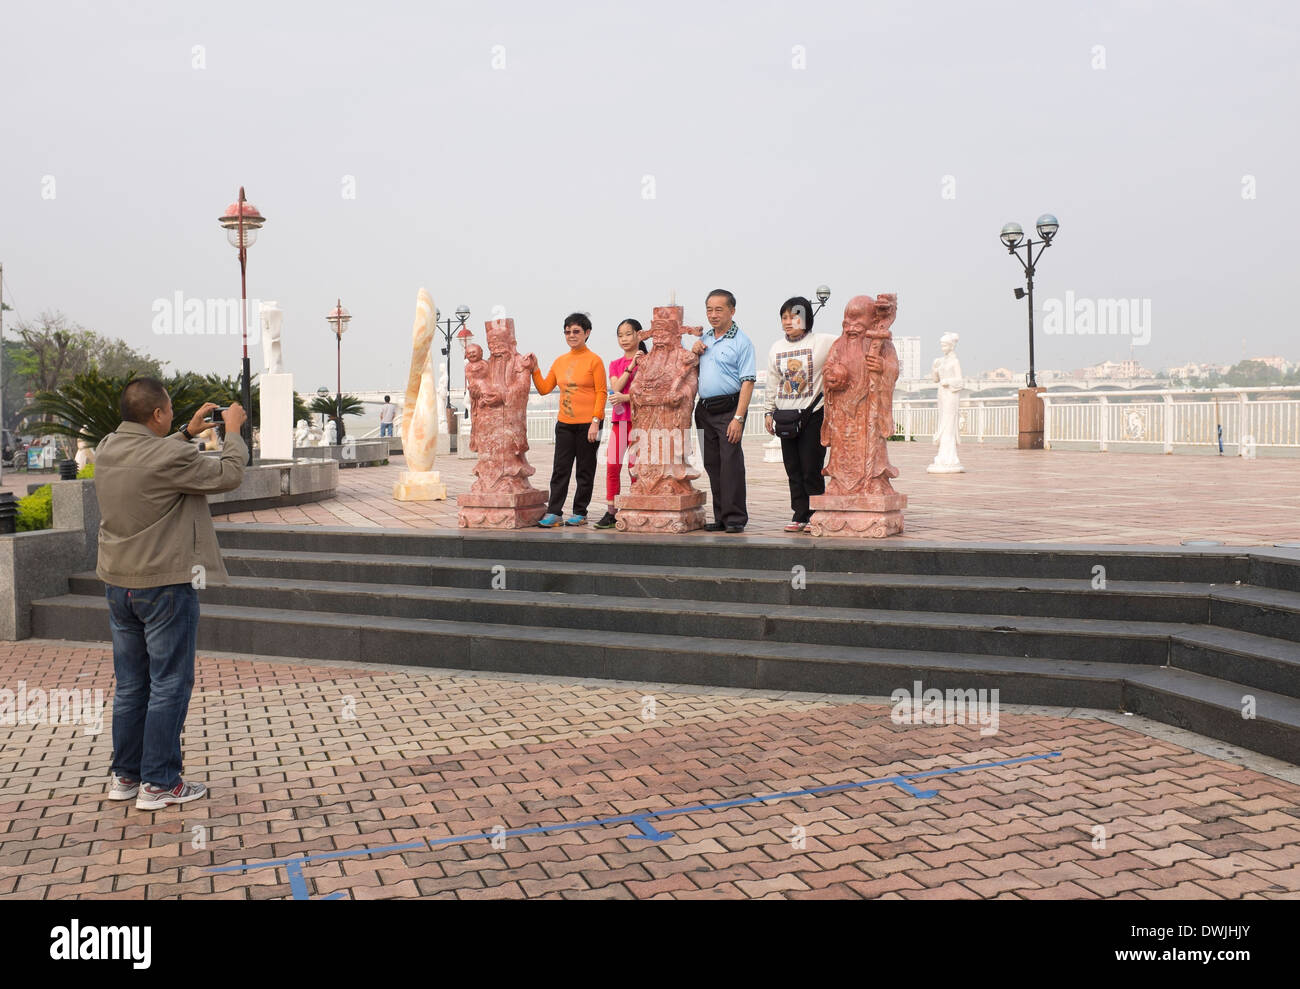 Touristen posieren für Foto von Kunstskulptur an der Uferpromenade in Danang Stockfoto